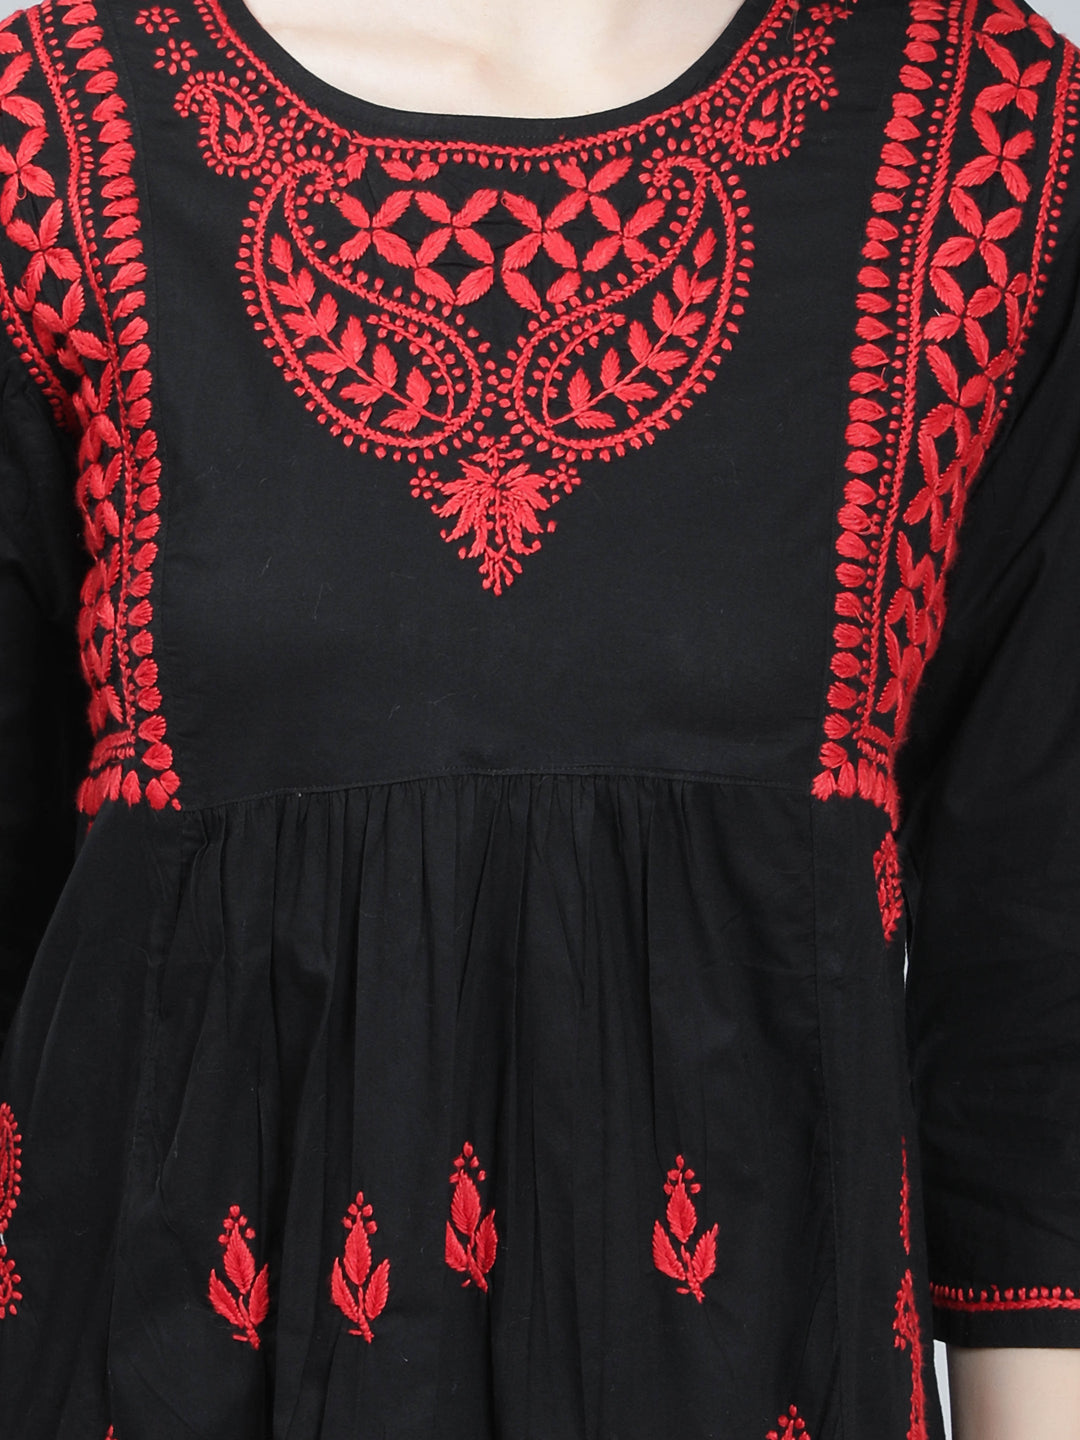 Black & Red Cotton Chikan Tunic Peplum Top